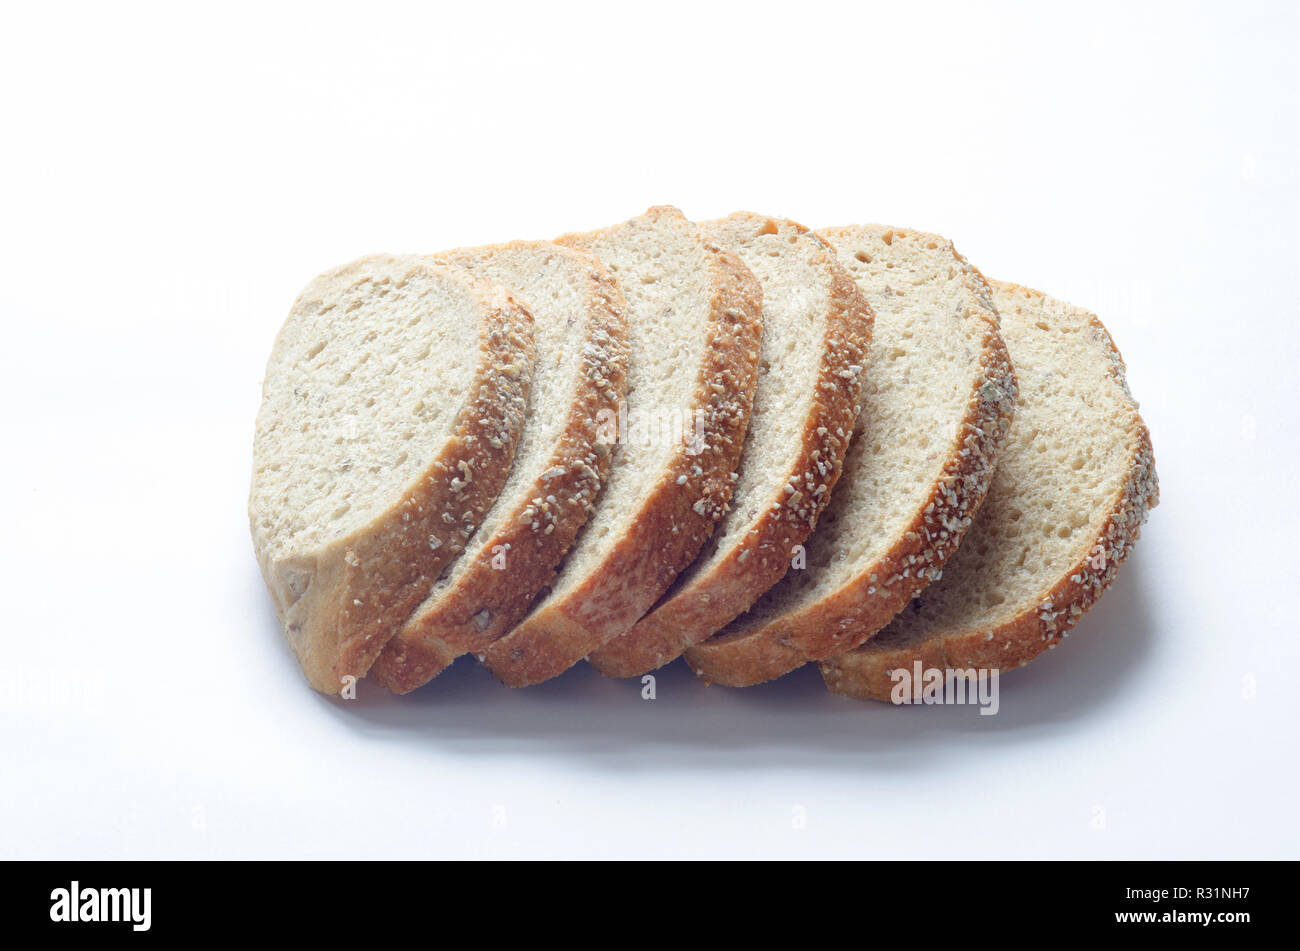 Rebanadas de granos antiguo panel toscano pan de grano entero con todo el trigo y la escanda harinas, granos enteros y semillas de lino en blanco Foto de stock